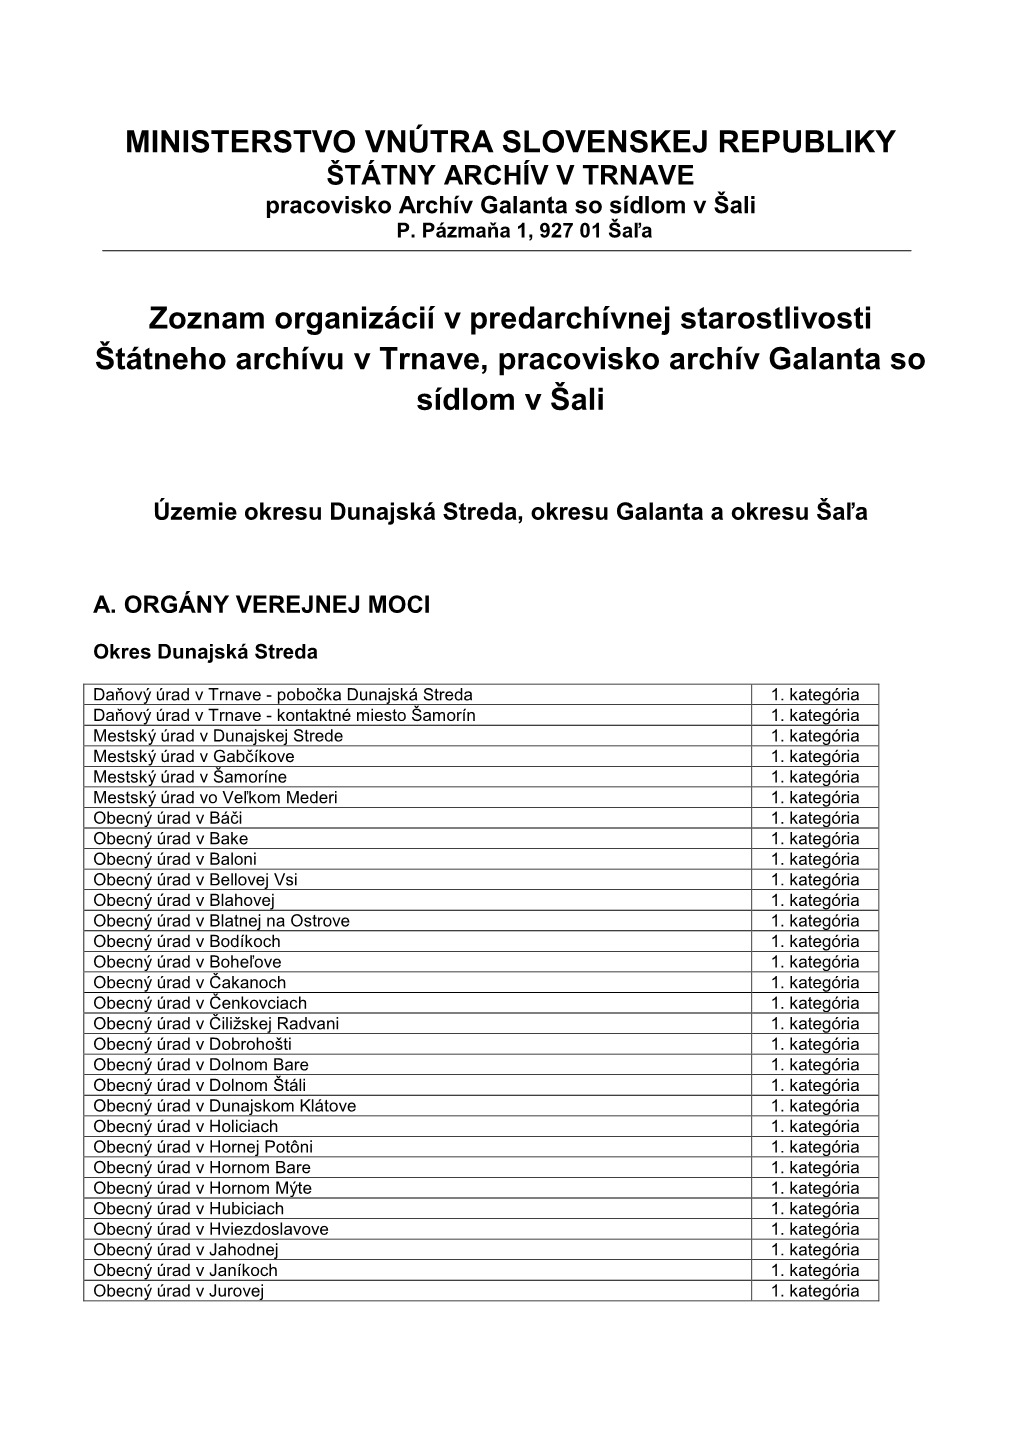 MINISTERSTVO VNÚTRA SLOVENSKEJ REPUBLIKY Zoznam Organizácií V Predarchívnej Starostlivosti Štátneho Archívu V Trnave